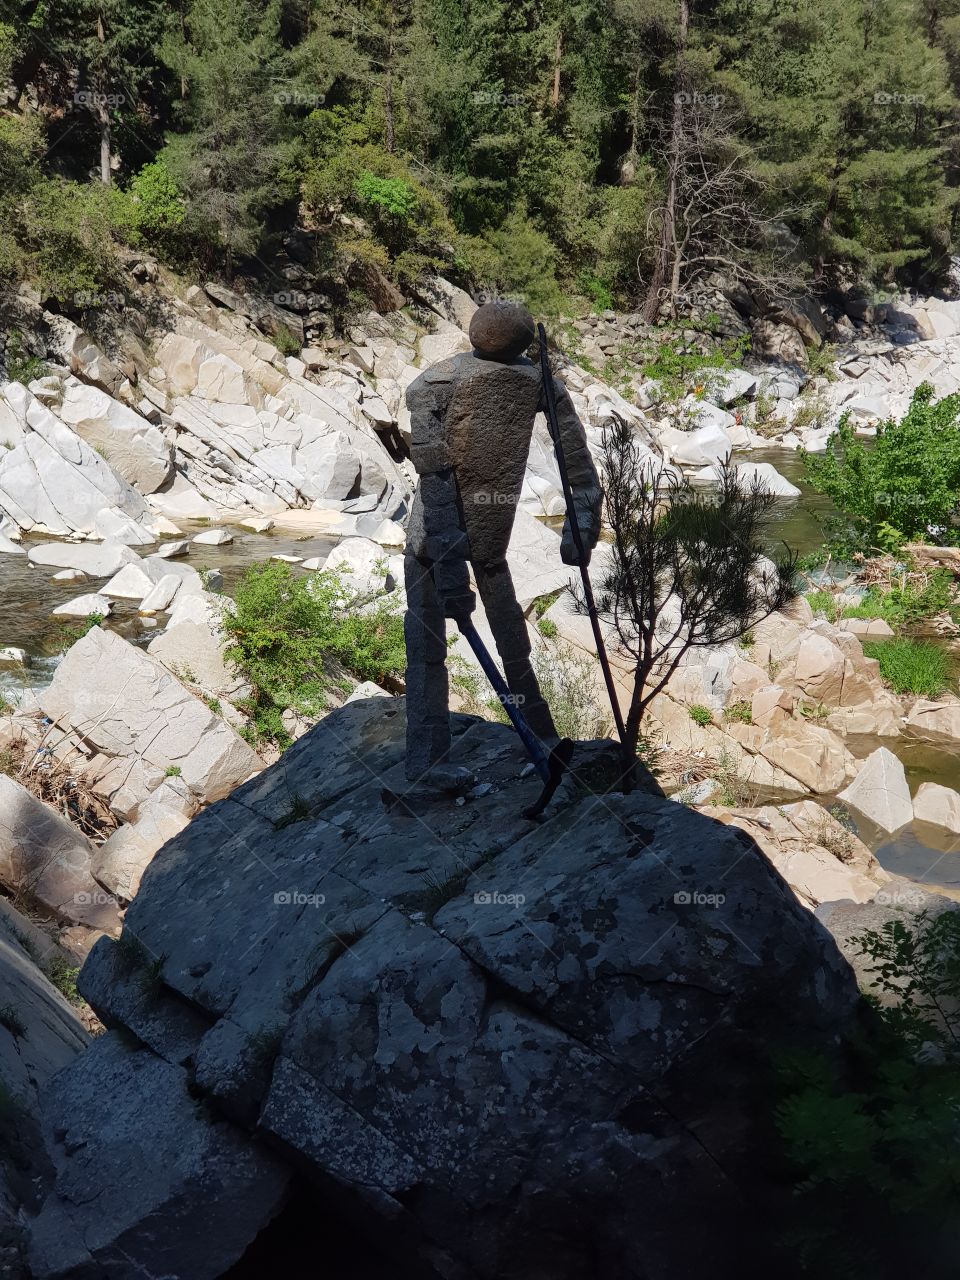 A weird statue on the rocks